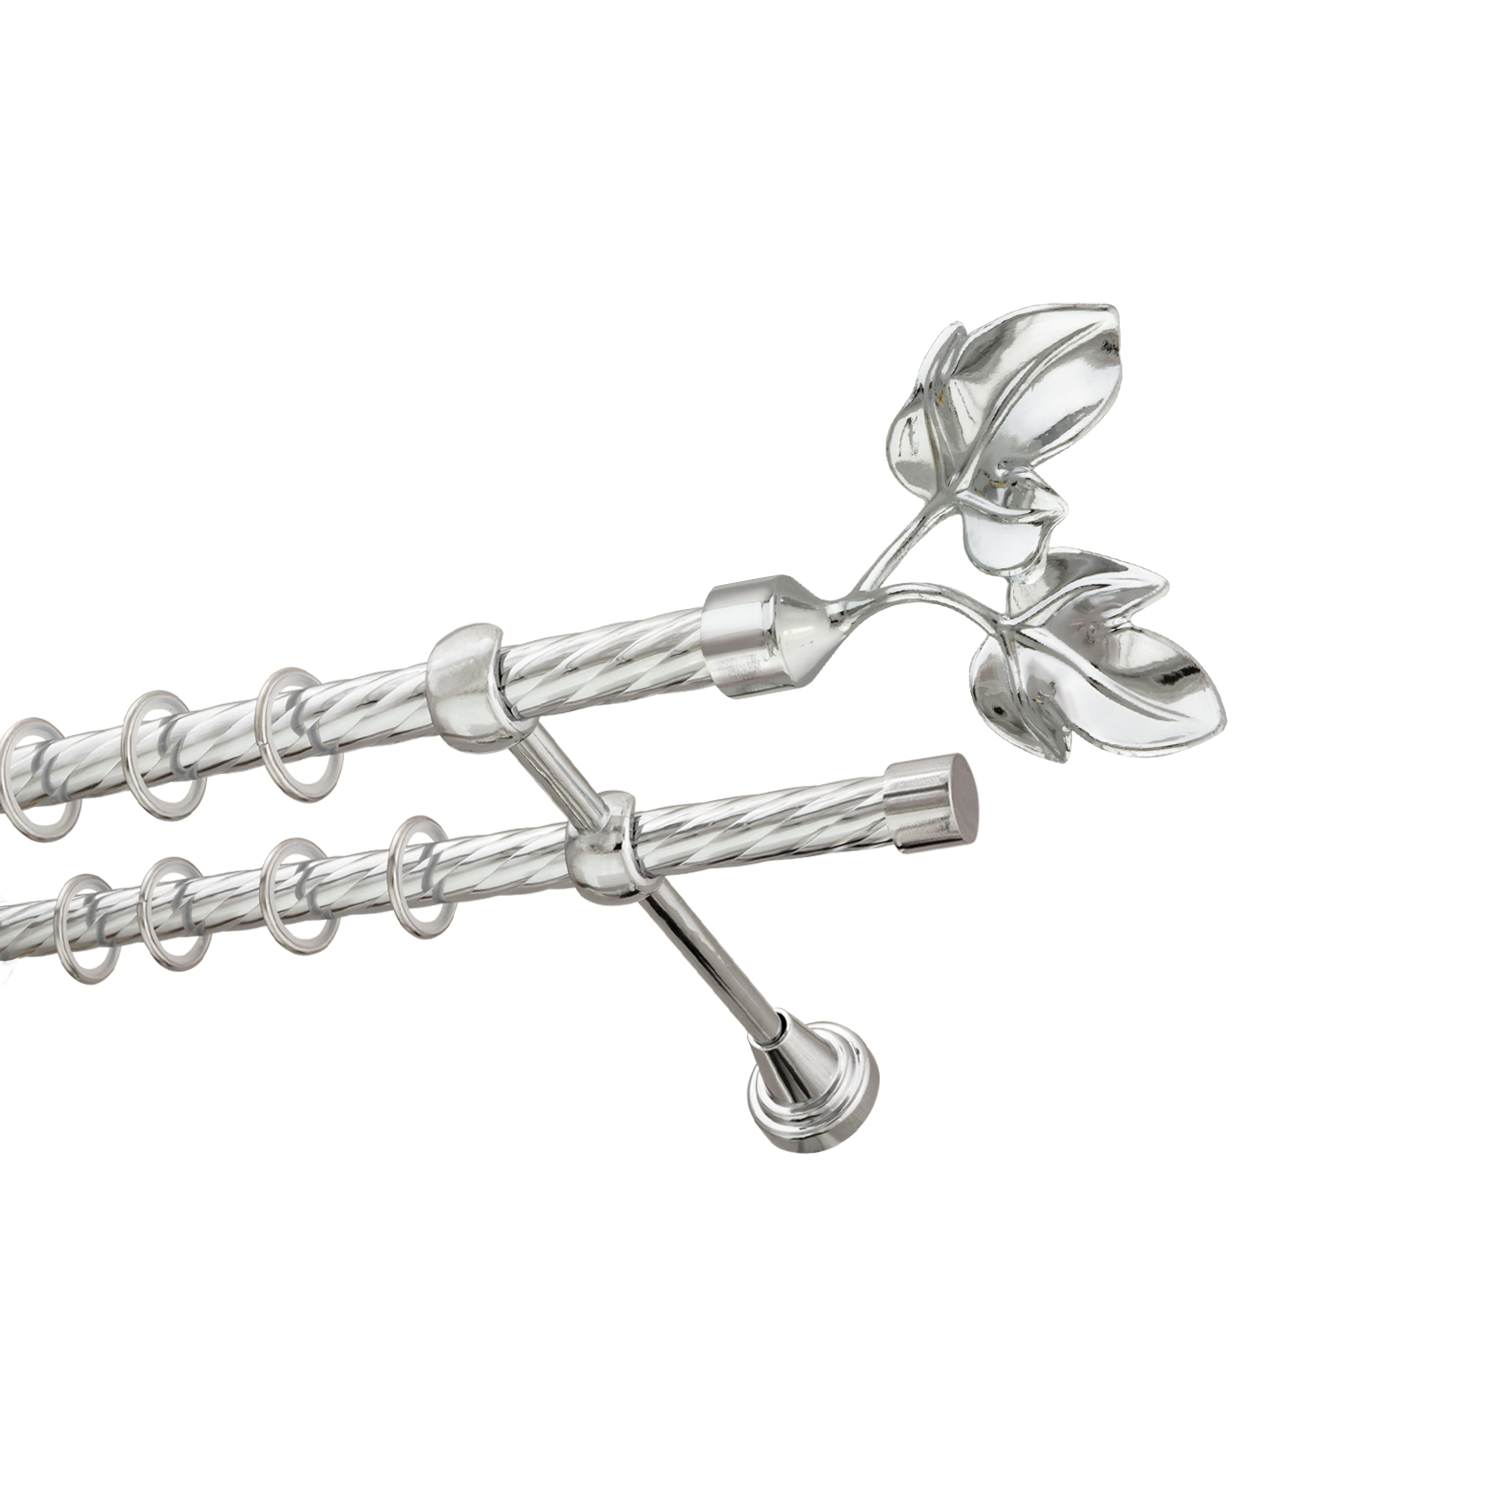 Металлический карниз для штор Листья, двухрядный 16/16 мм, серебро, витая штанга, длина 140 см - фото Wikidecor.ru